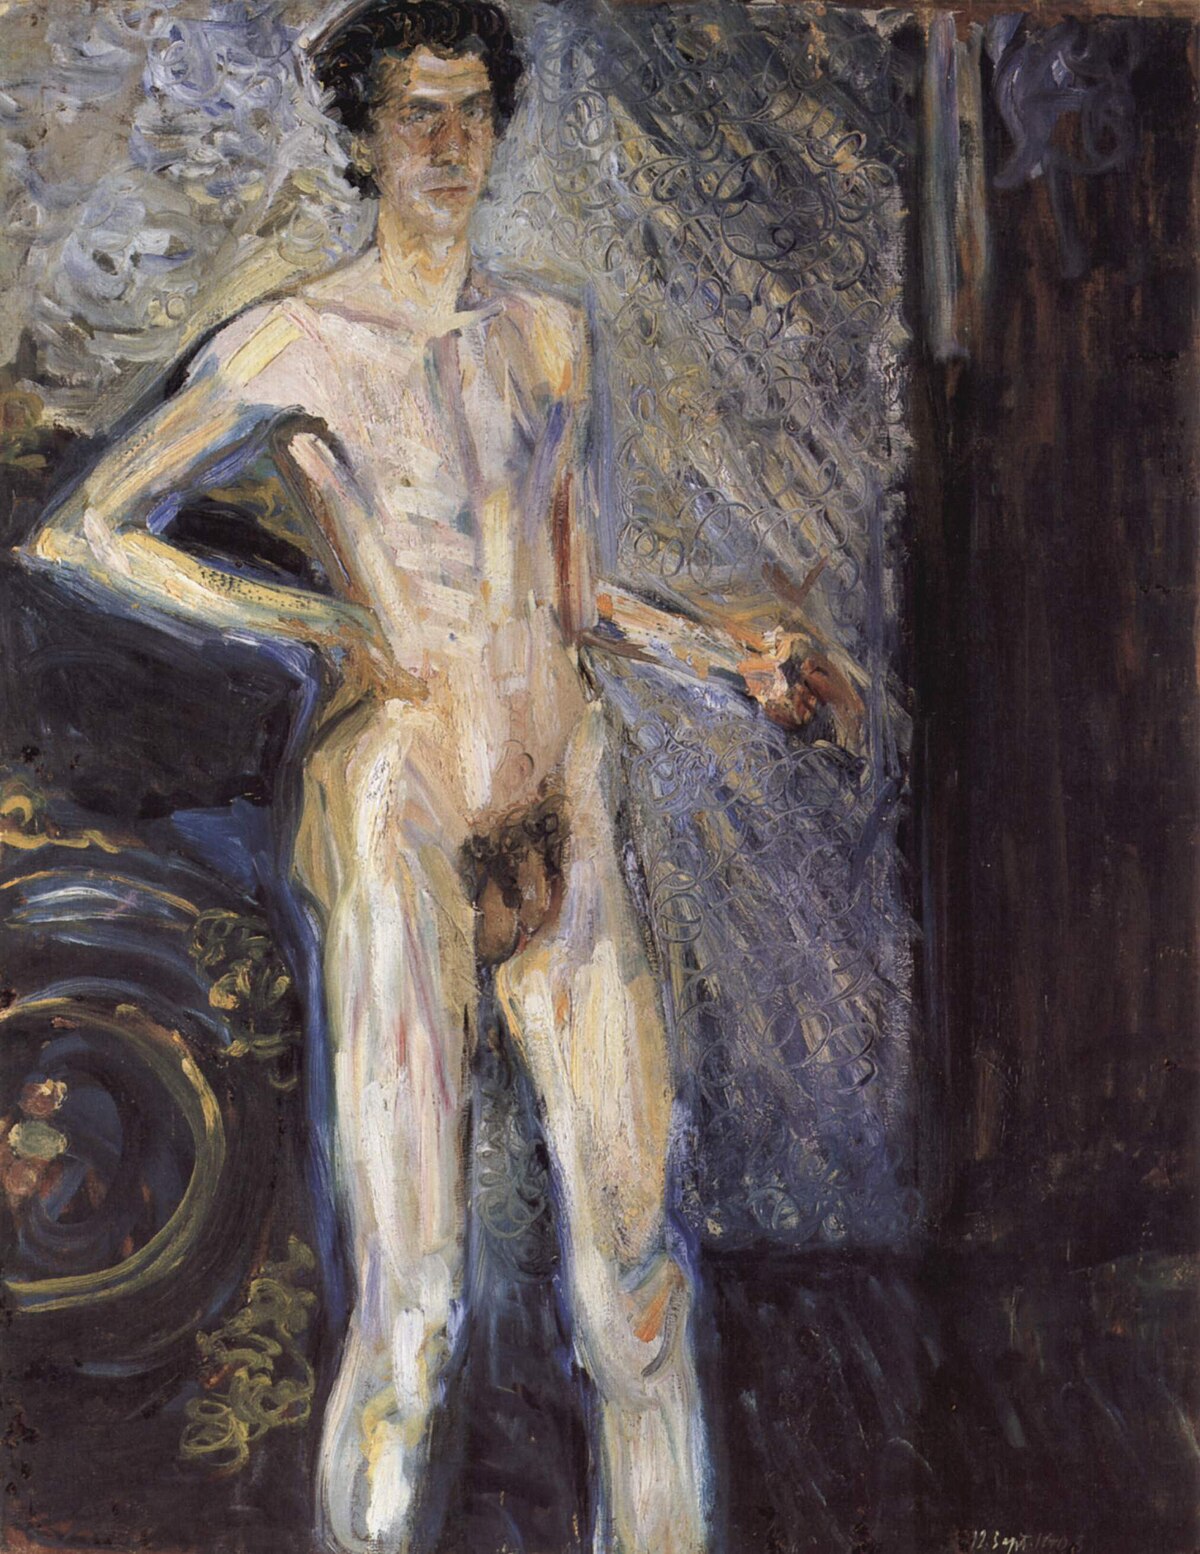 Файл:Richard Gerstl - Nude Self-Portrait with Palette.jpg - Википедия Переи...